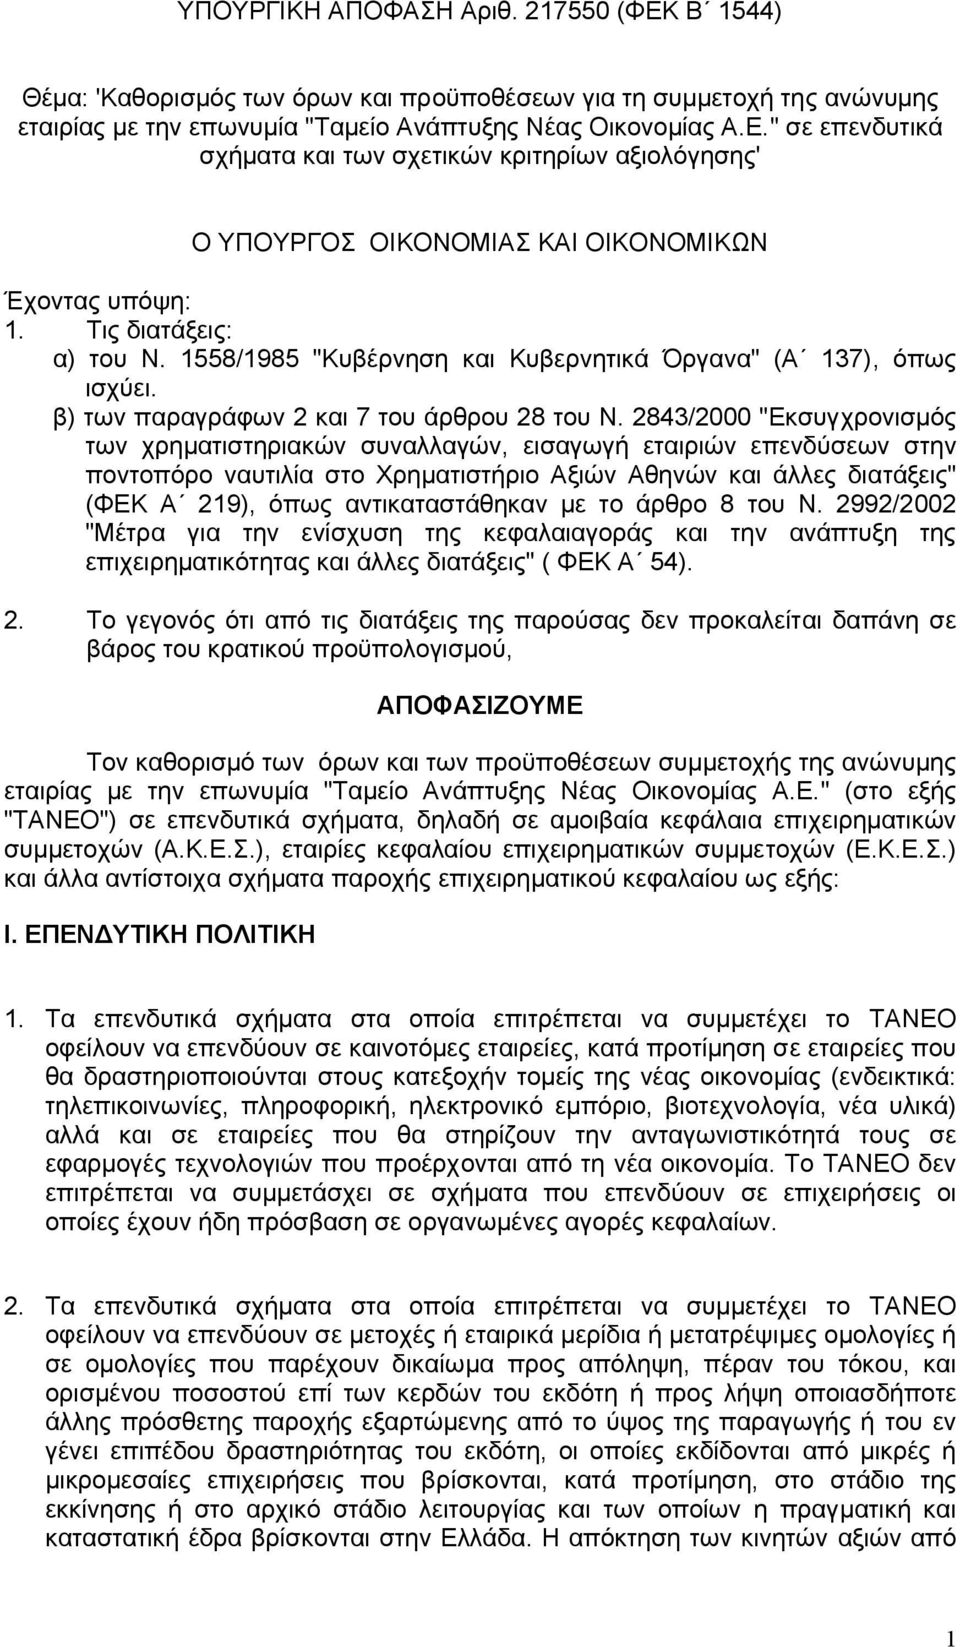 2843/2000 "Εκσυγχρονισµός των χρηµατιστηριακών συναλλαγών, εισαγωγή εταιριών επενδύσεων στην ποντοπόρο ναυτιλία στο Χρηµατιστήριο Αξιών Αθηνών και άλλες διατάξεις" (ΦΕΚ Α 219), όπως αντικαταστάθηκαν